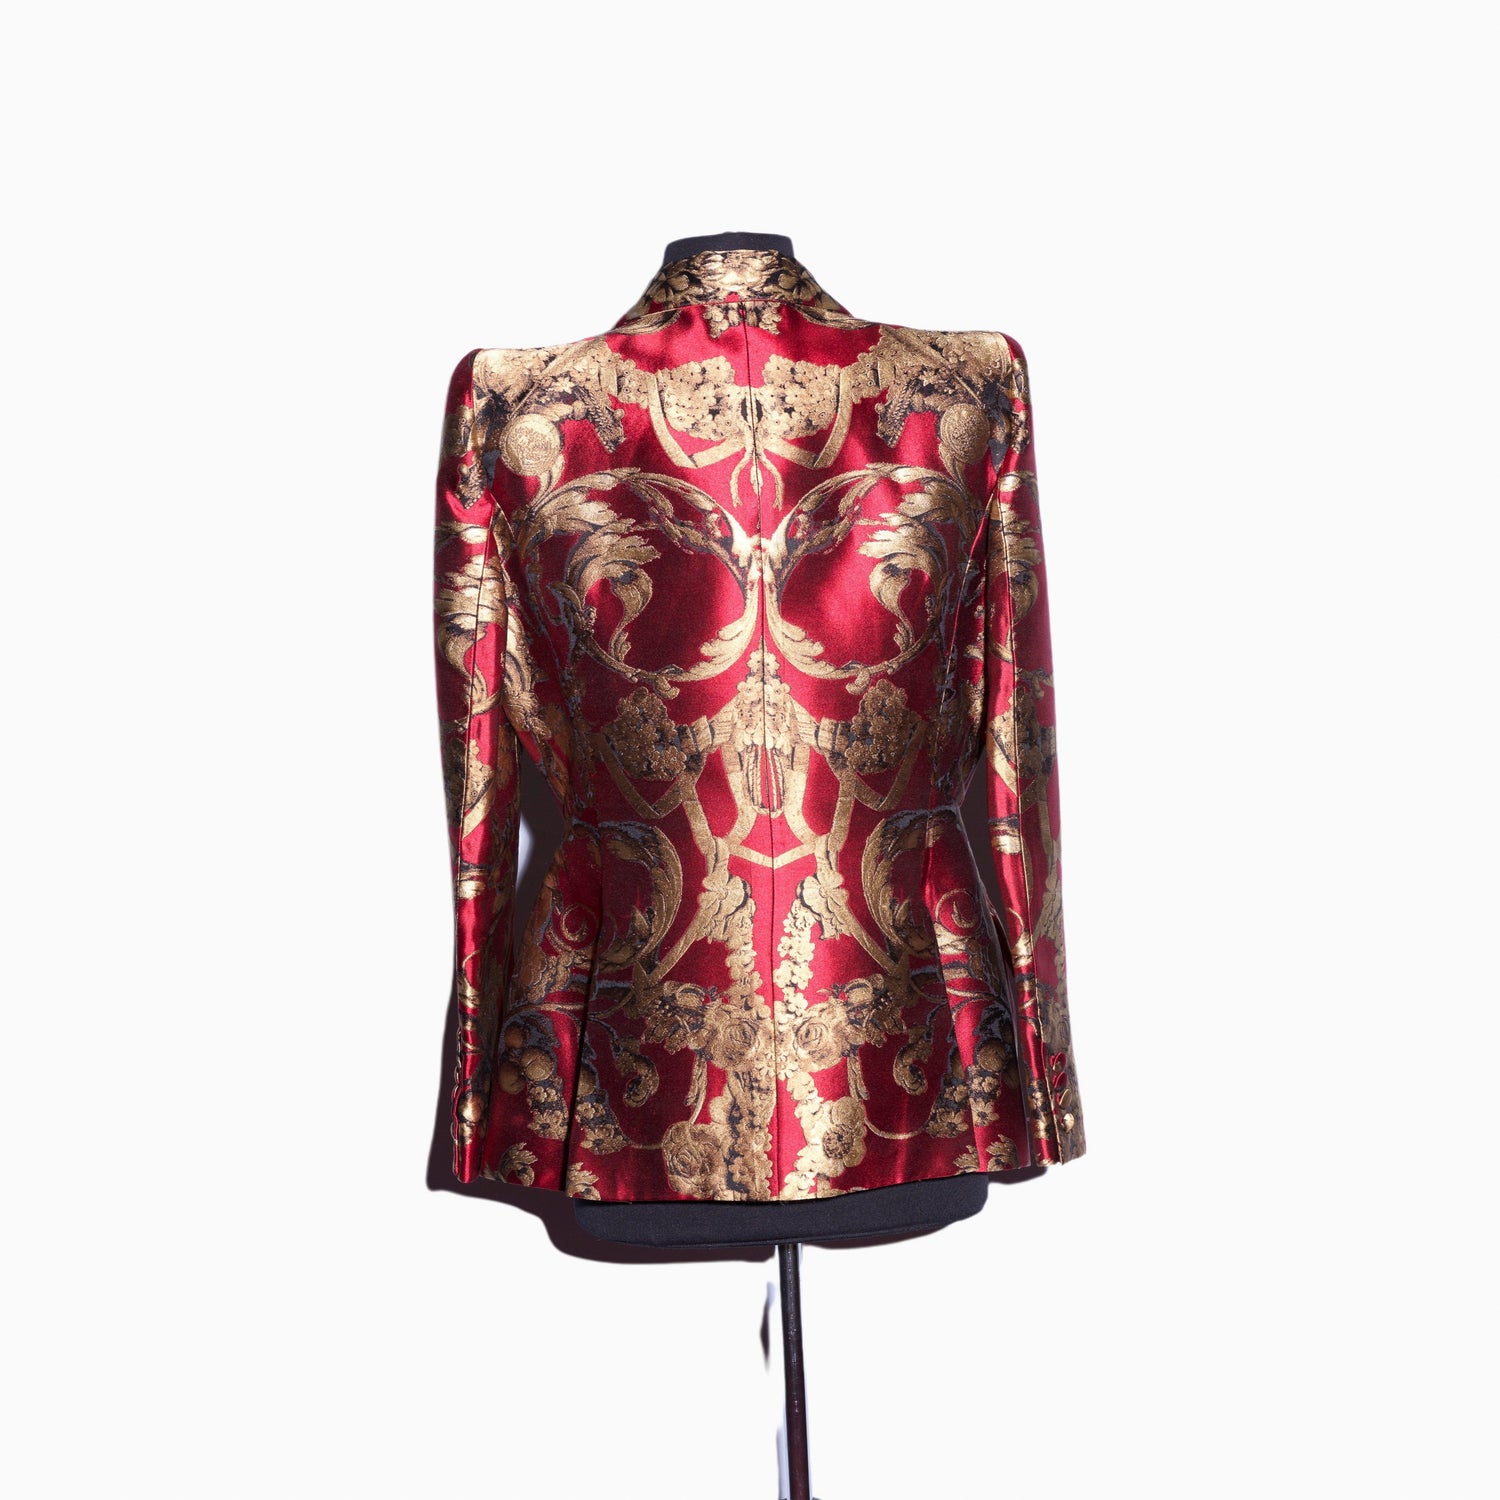 Lysis vintage Alexander McQueen printed jacket - M/L - 2000s